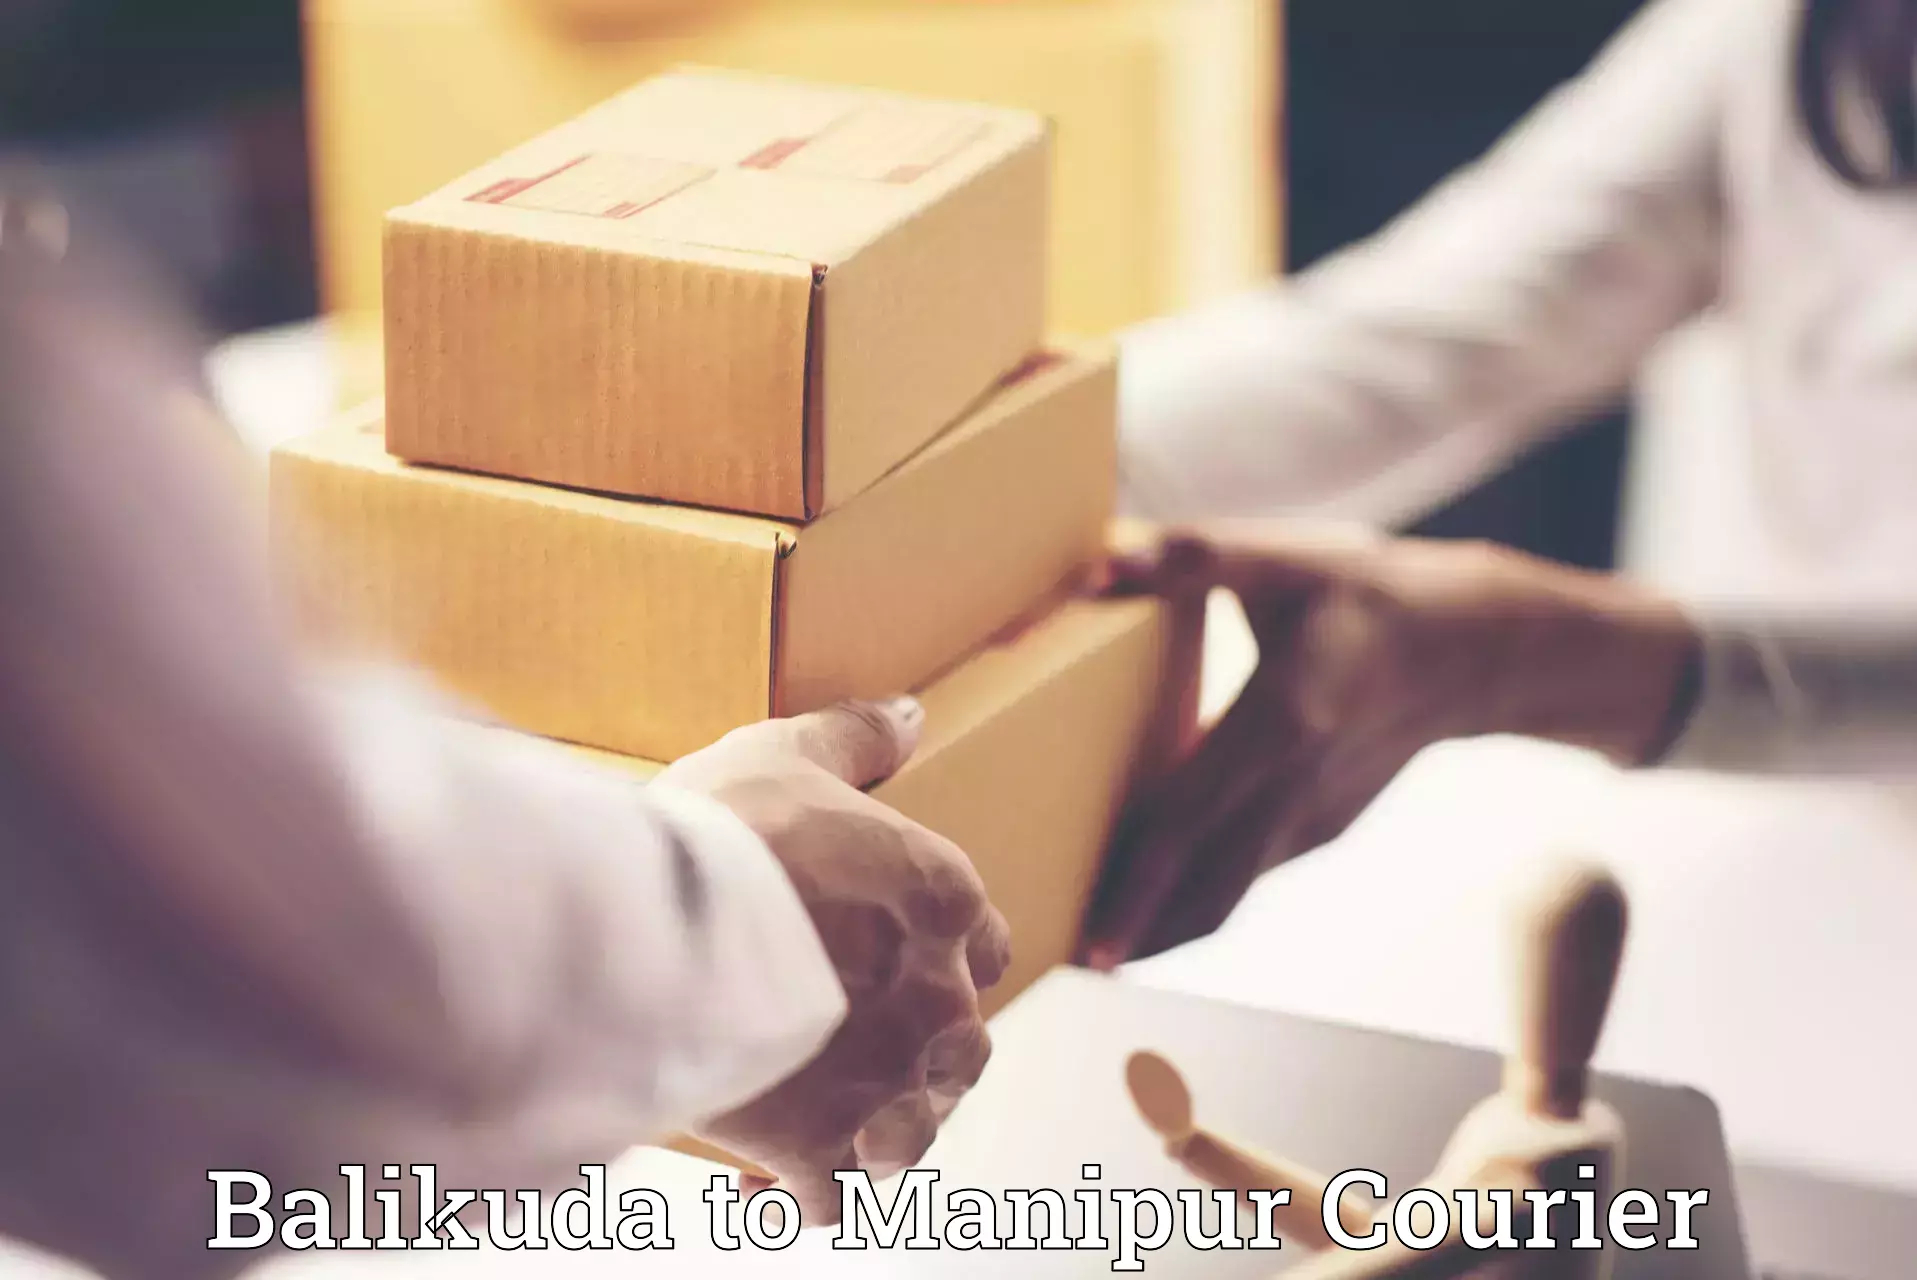 Professional moving strategies Balikuda to Manipur